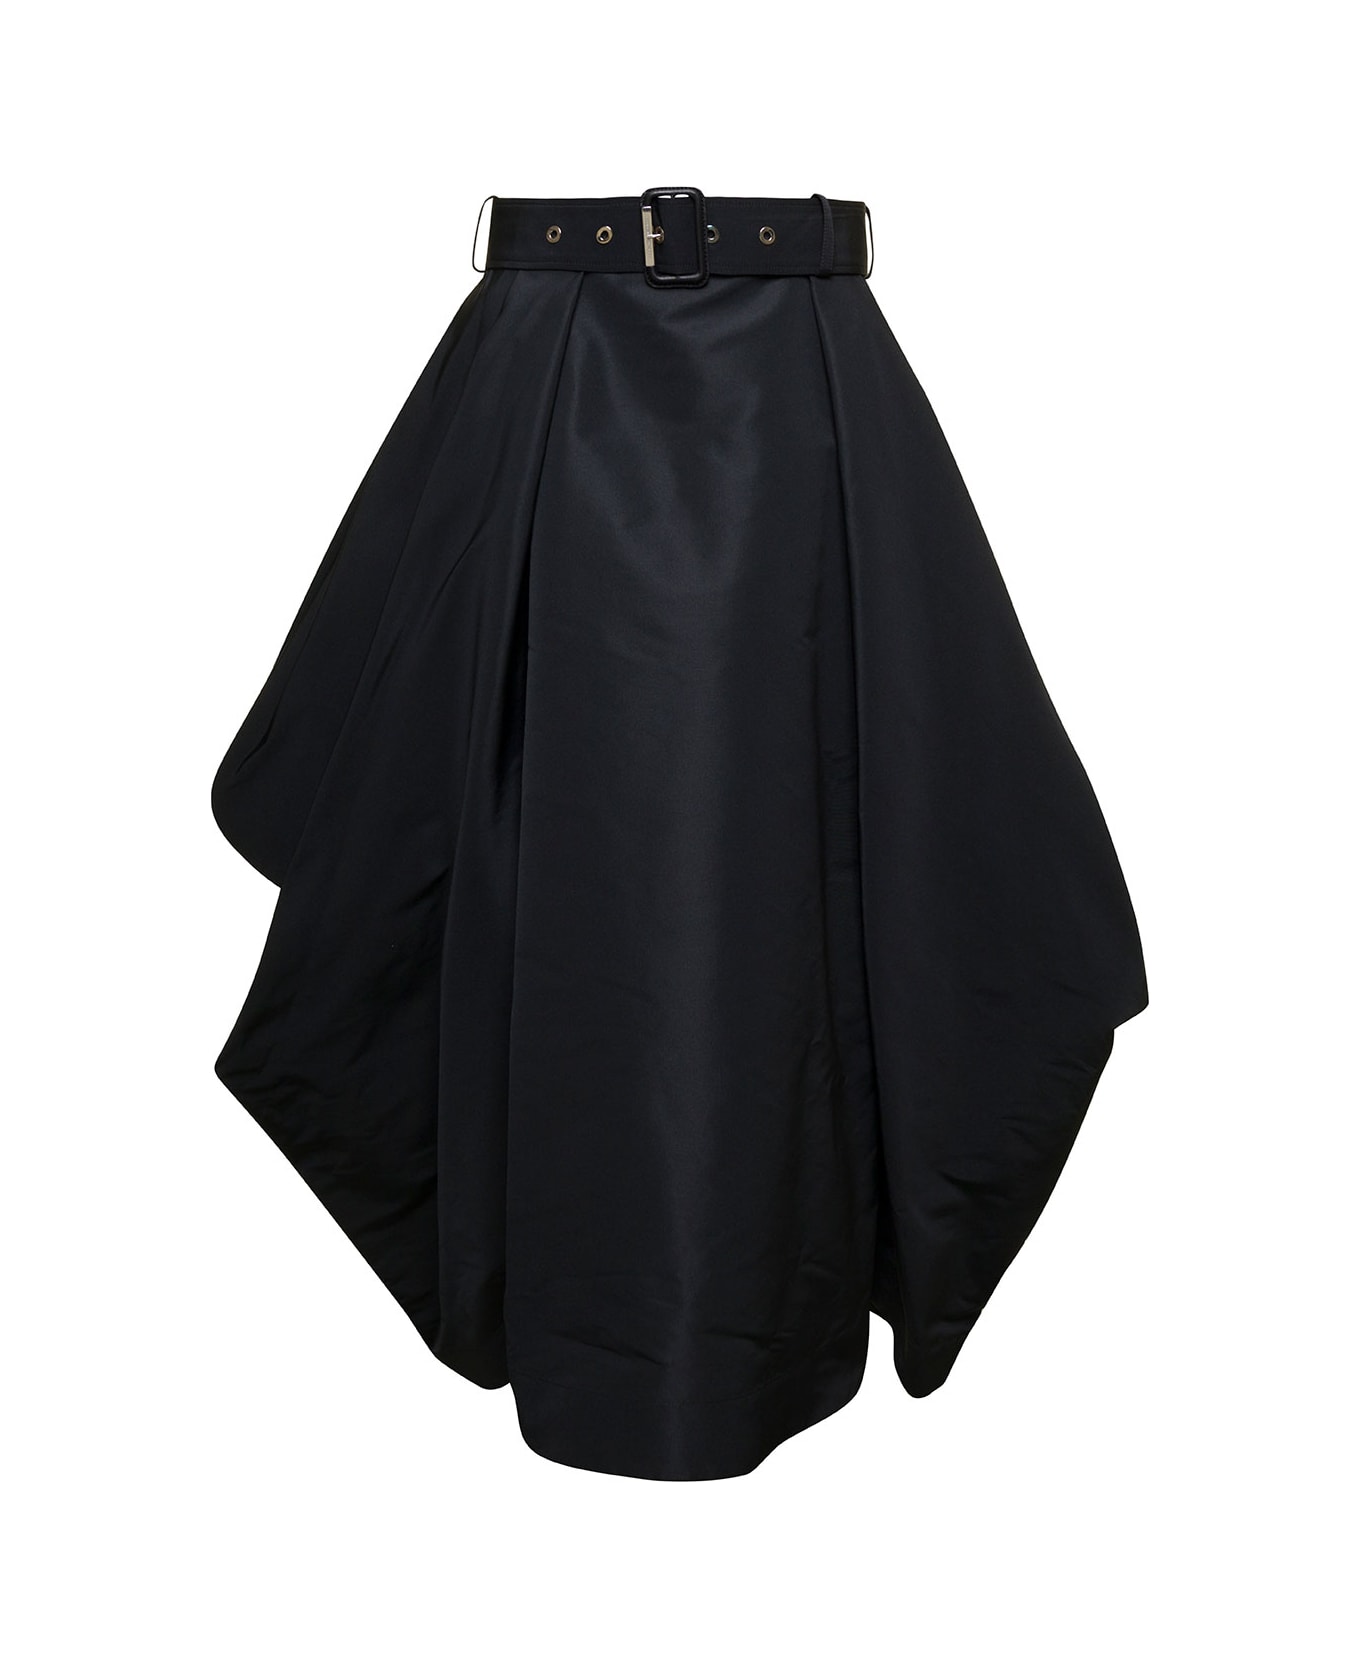 Alexander McQueen Skirt Polyfaille - Black